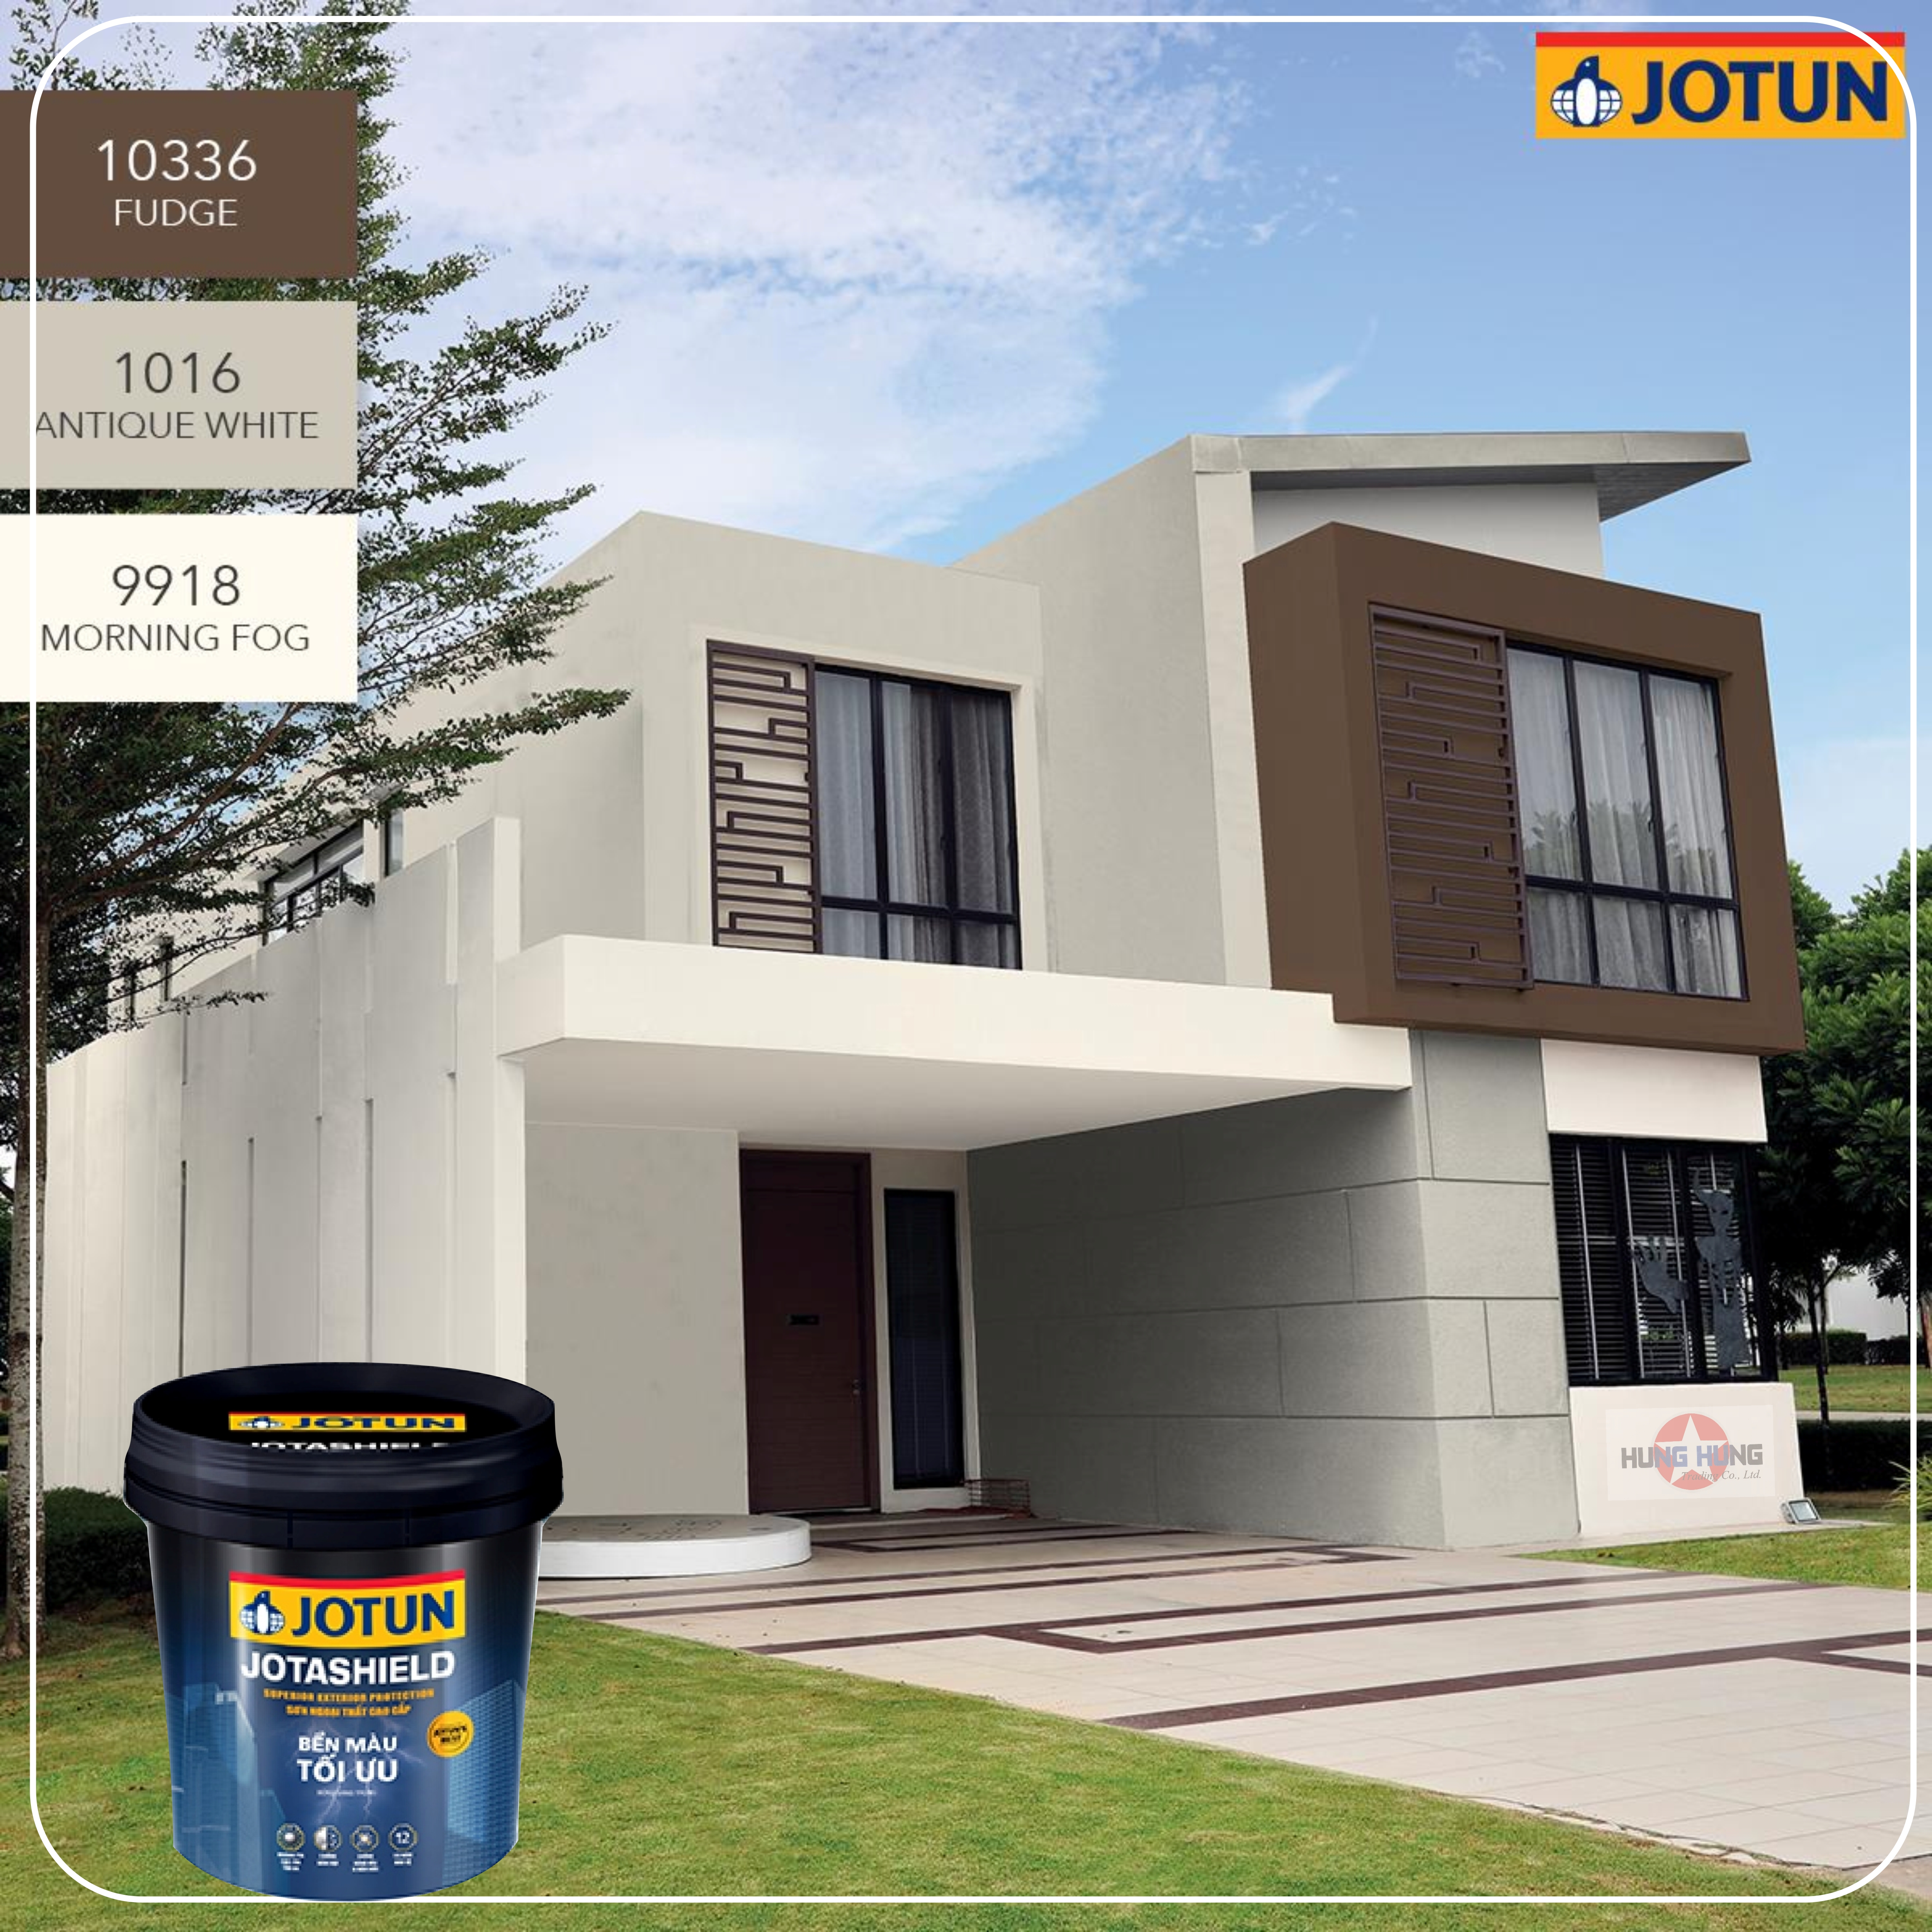 Có quá nhiều lựa chọn mã màu sơn để sơn lại ngôi nhà của bạn? Đừng lo lắng, tìm hiểu ngay mã màu sơn Jotun 9918 bằng cách tìm kiếm trên web và xem bức ảnh liên quan để kiểm tra tính chính xác và độ phù hợp của nó.